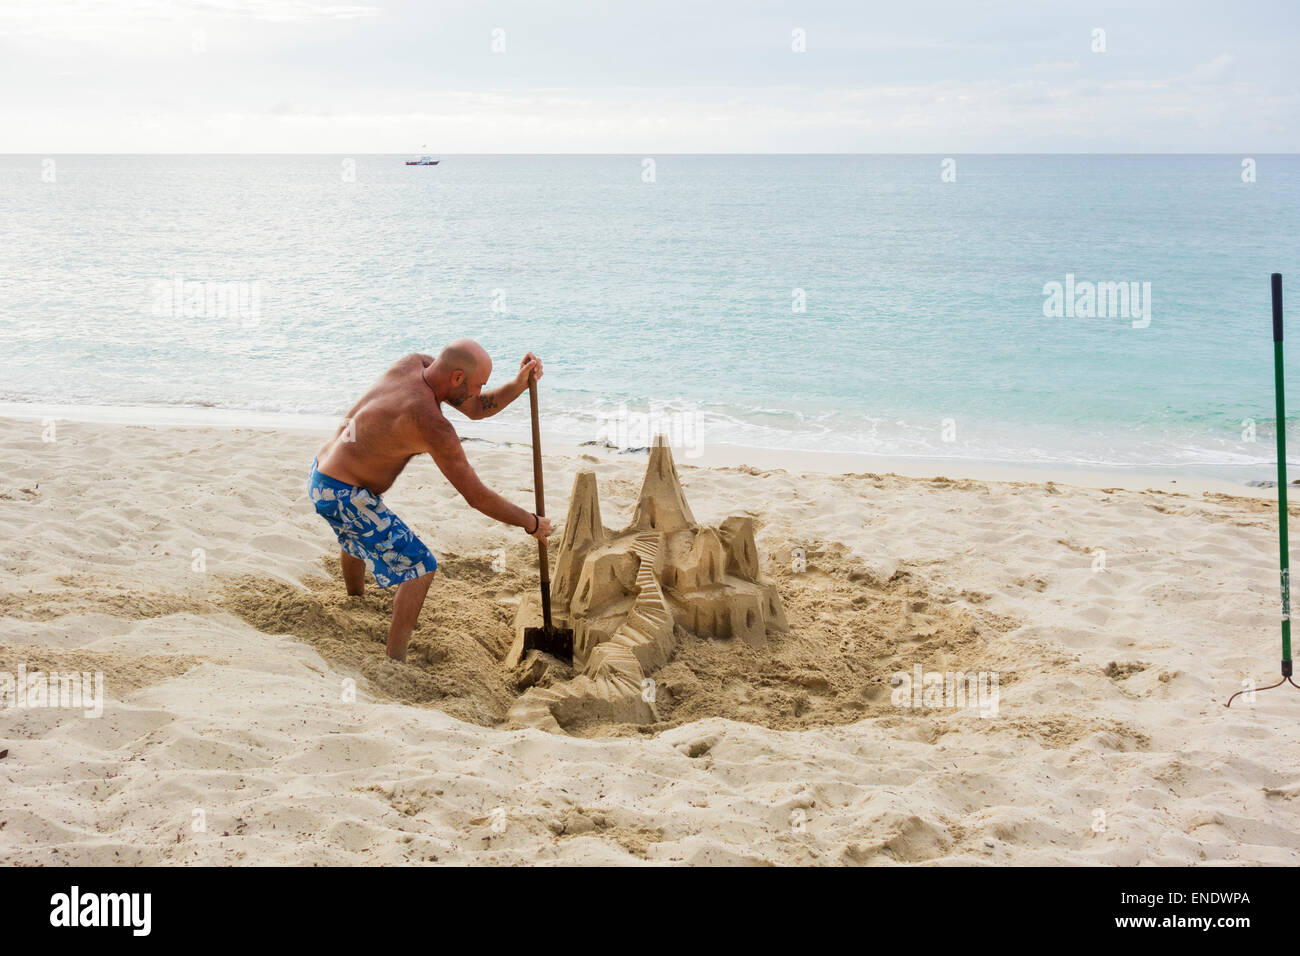 a-caucasian-man-builds-a-sand-castle-on-